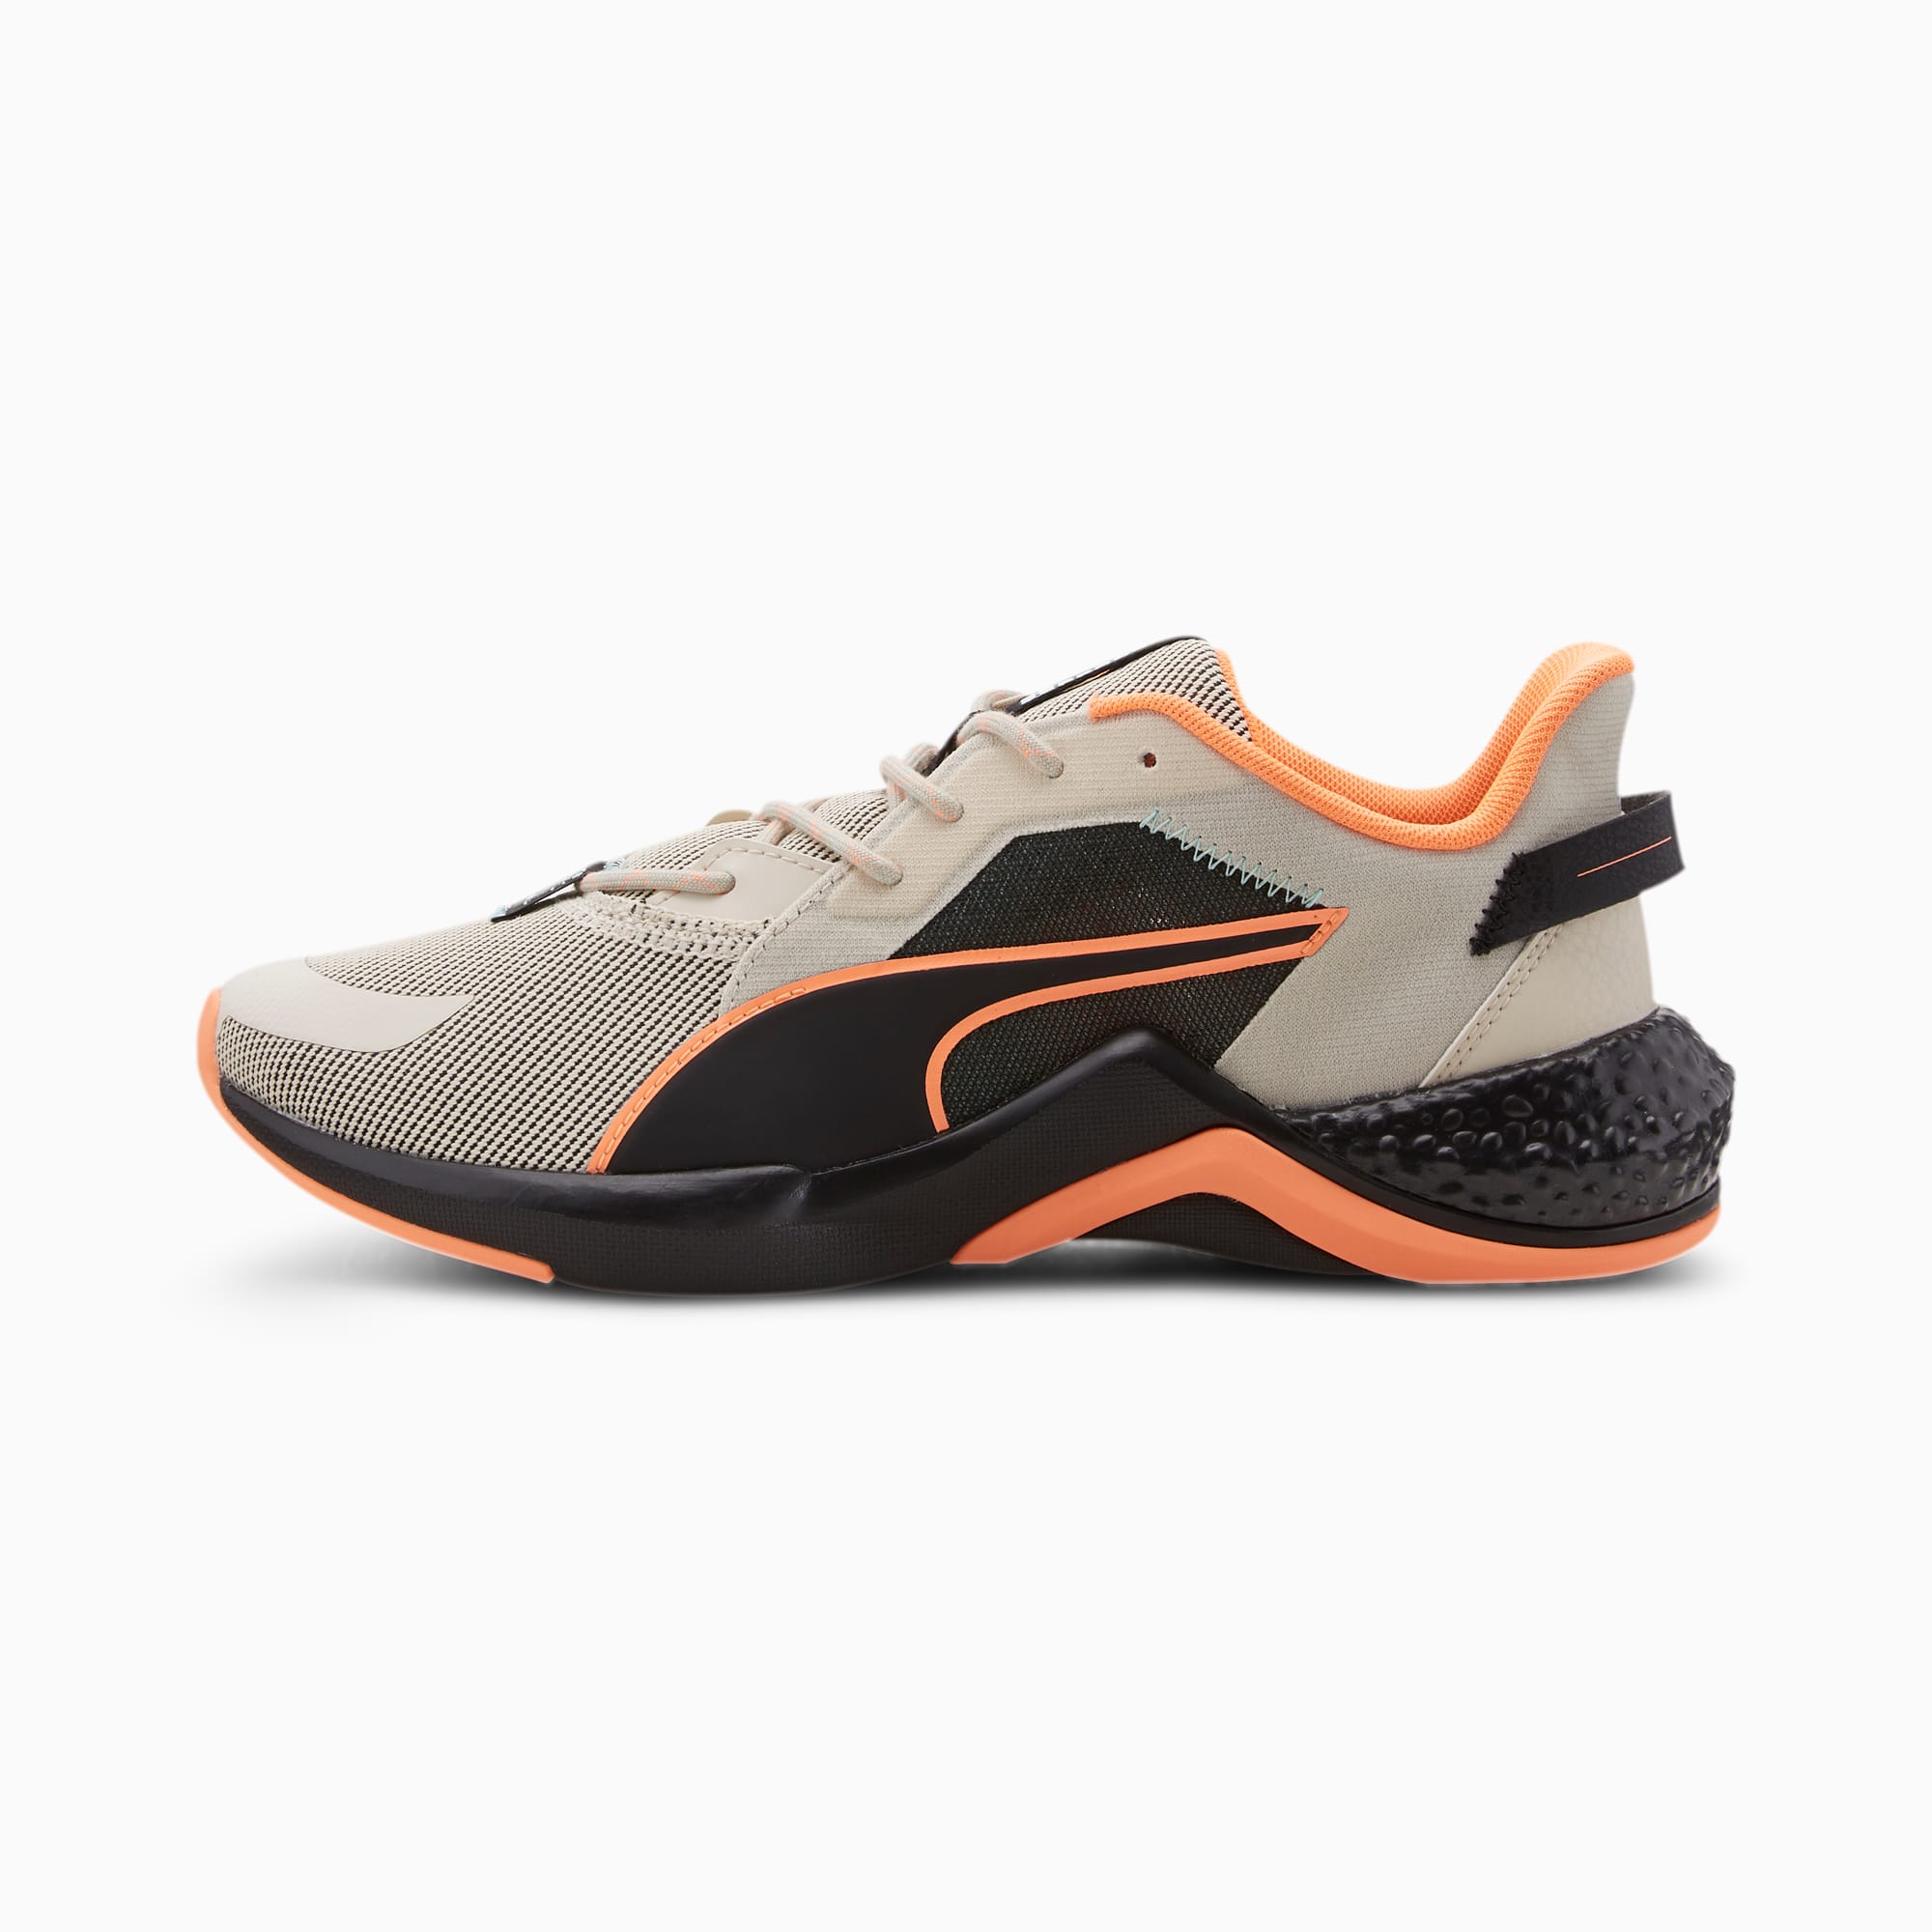 PUMA x FIRST MILE HYBRID NX Ozone Women's Running Shoes | Tapioca-Puma  Black-Fizzy | PUMA Hybrid Footwear | PUMA